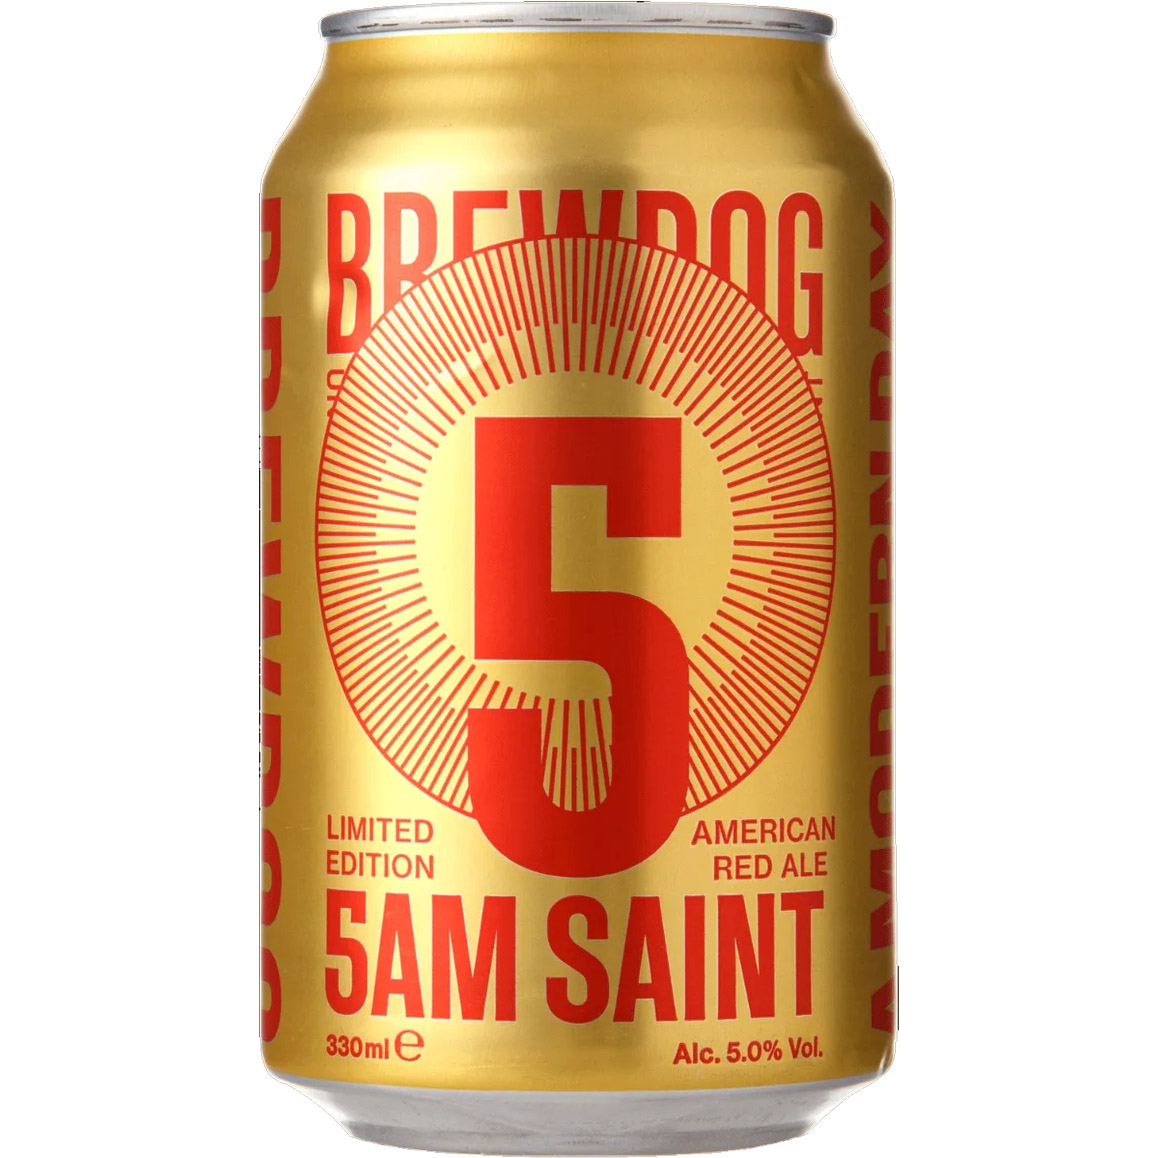 Пиво BrewDog 5AM Saint янтарное 5% 0.33 л ж/б - фото 1